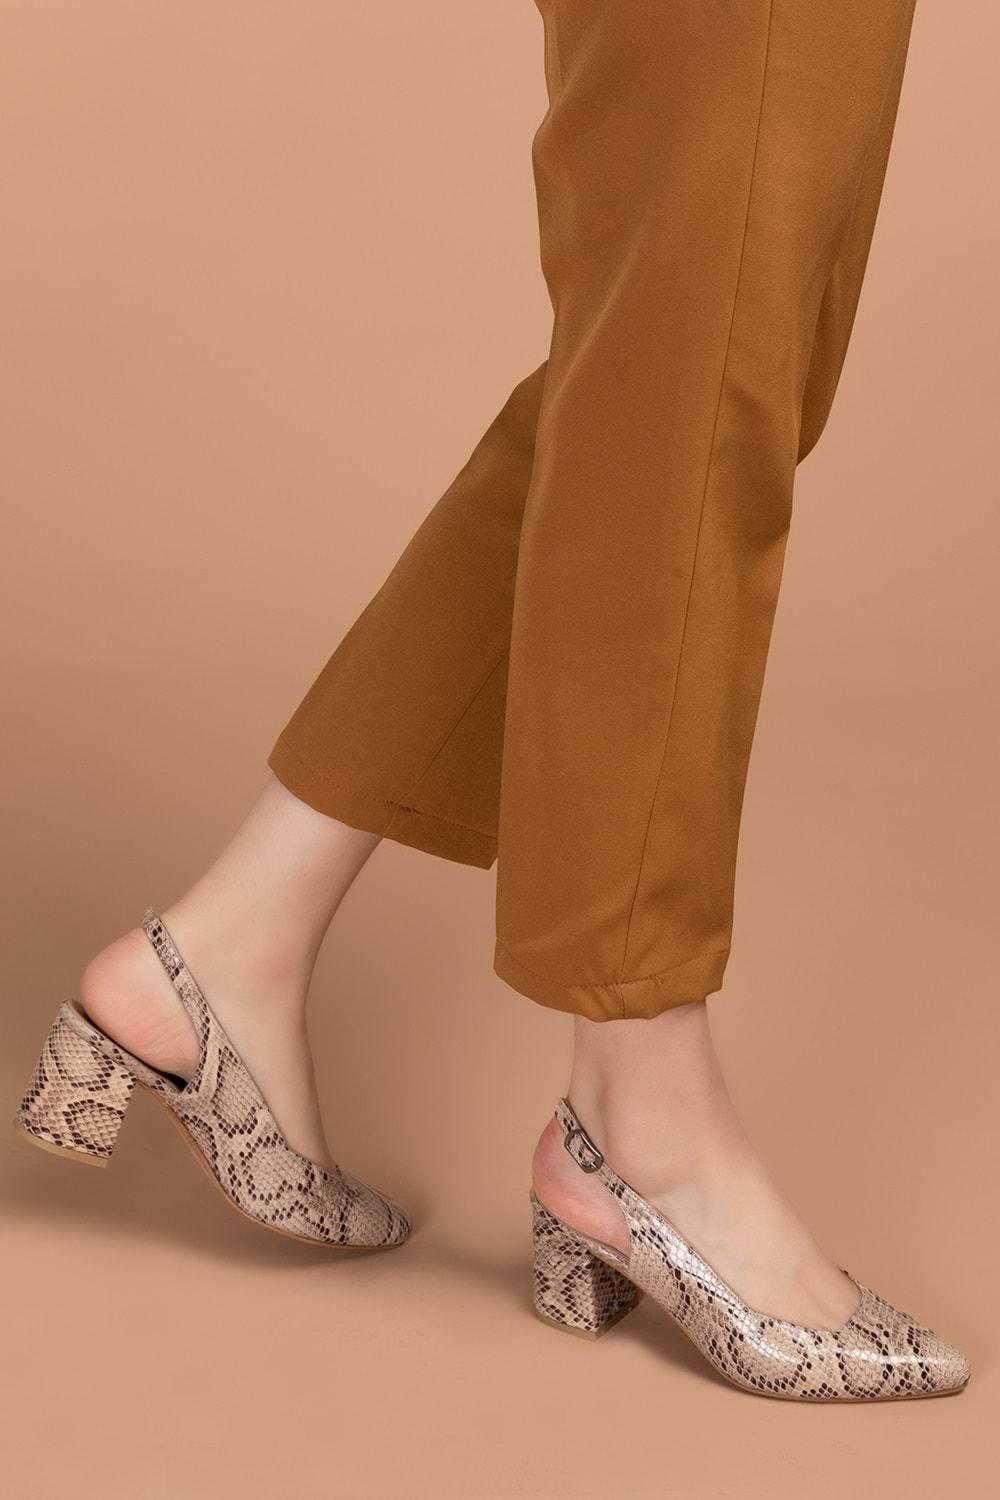 Gondol Kadın Hakiki Deri Yılan Desenli Topuklu Ayakkabı şhn.709 - Vizon Yılan - 41